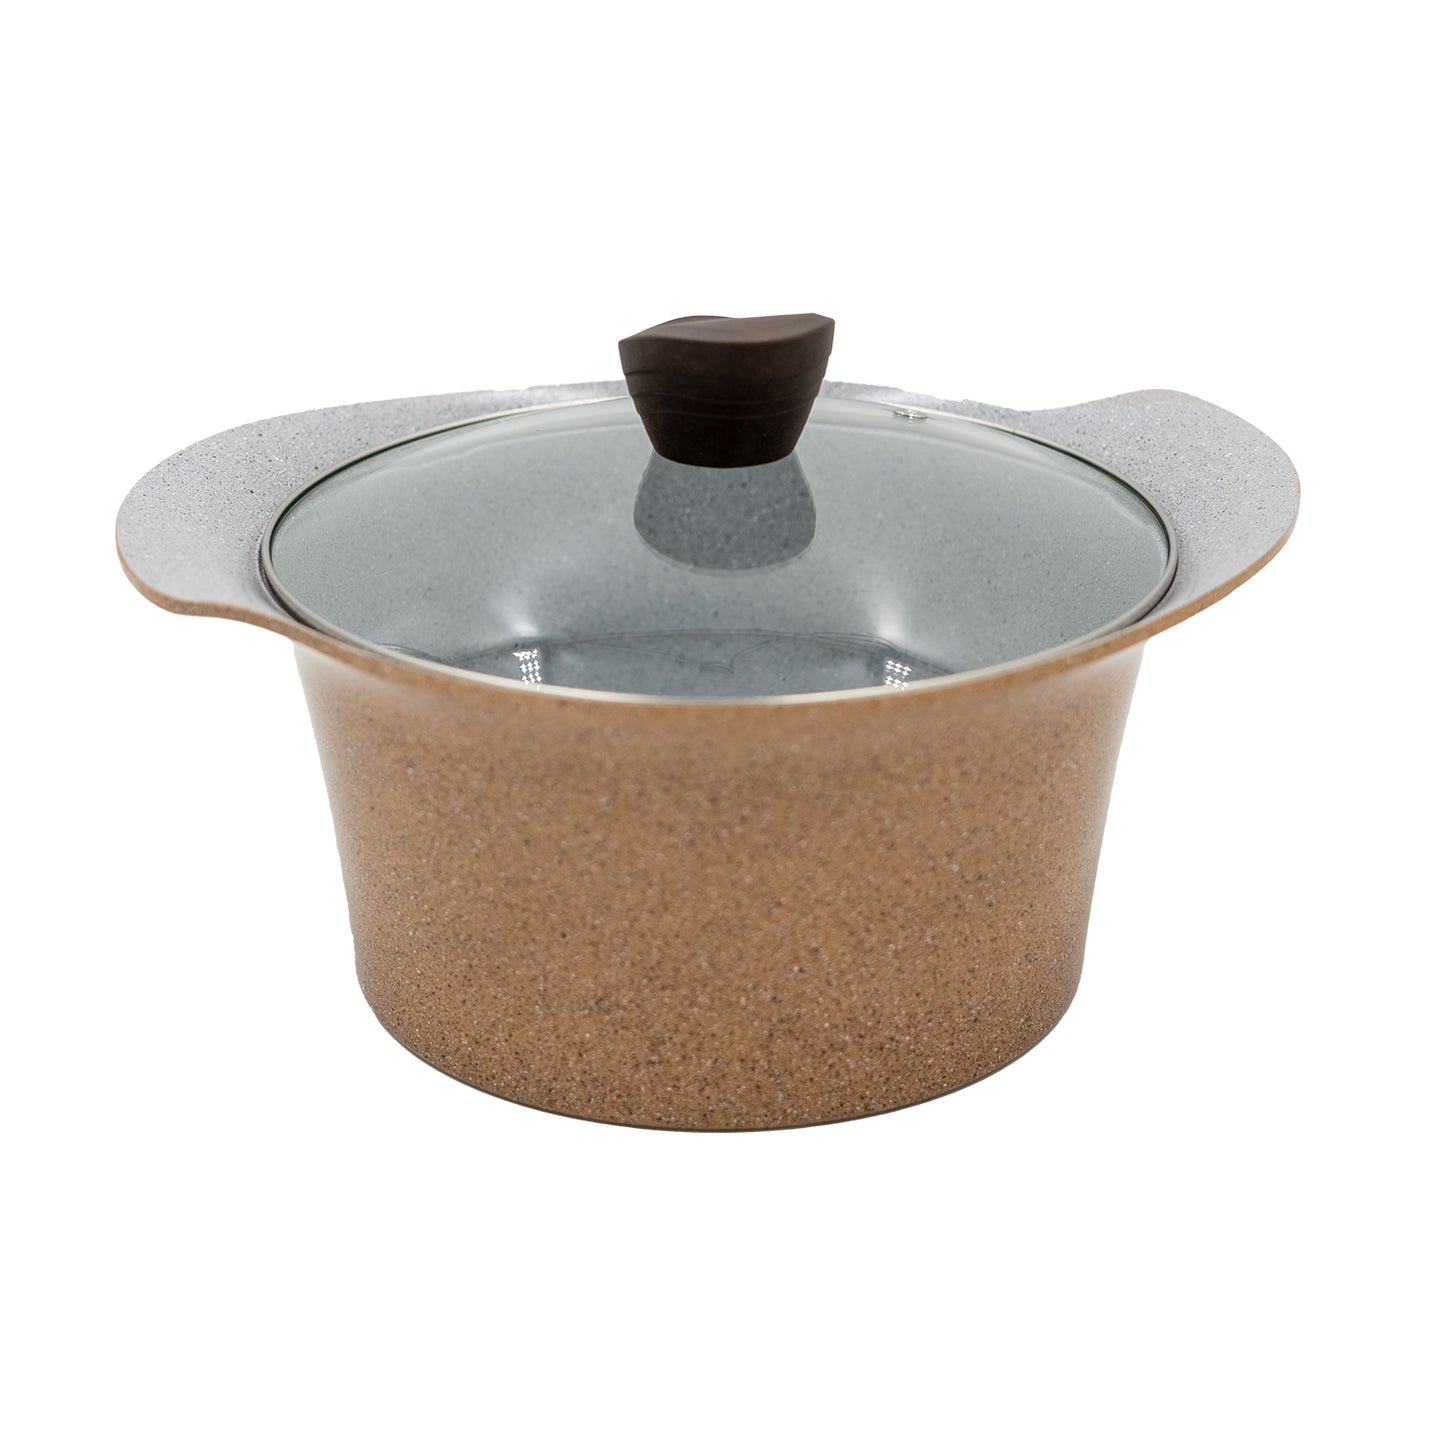 Ecook IH Ceramic Coating Stock Pot Brown